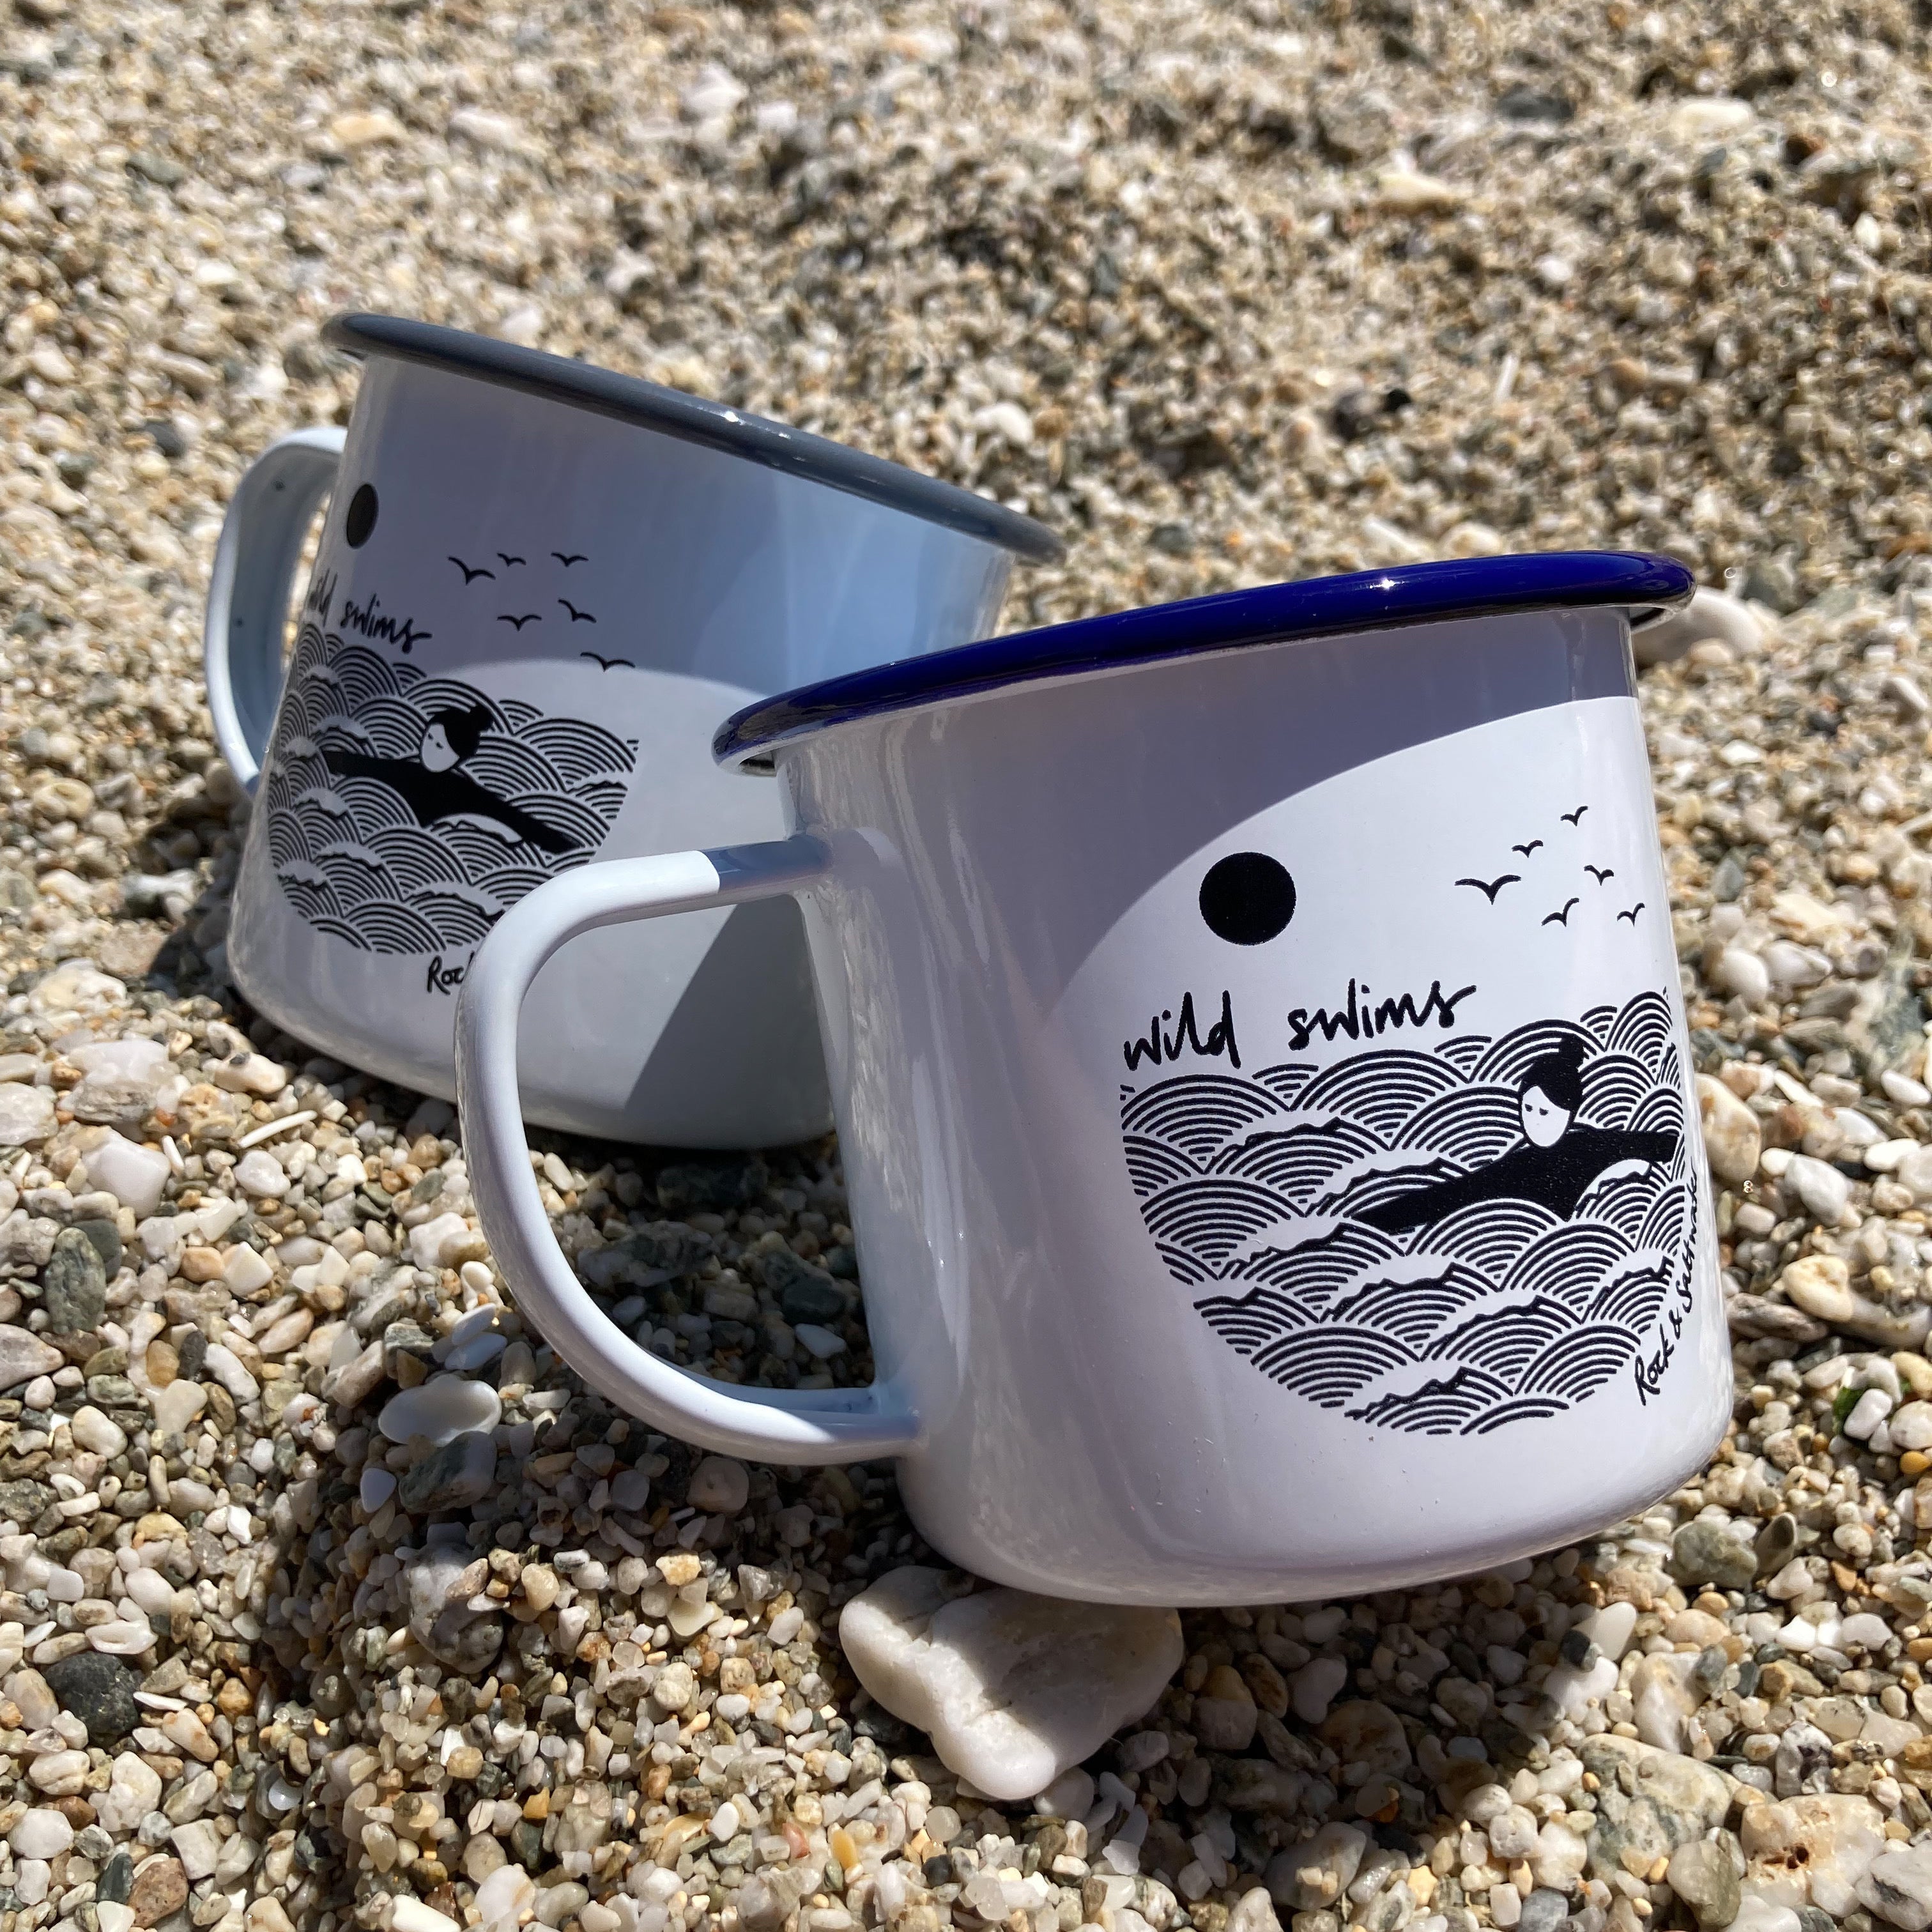 Wild swimming enamel mugs